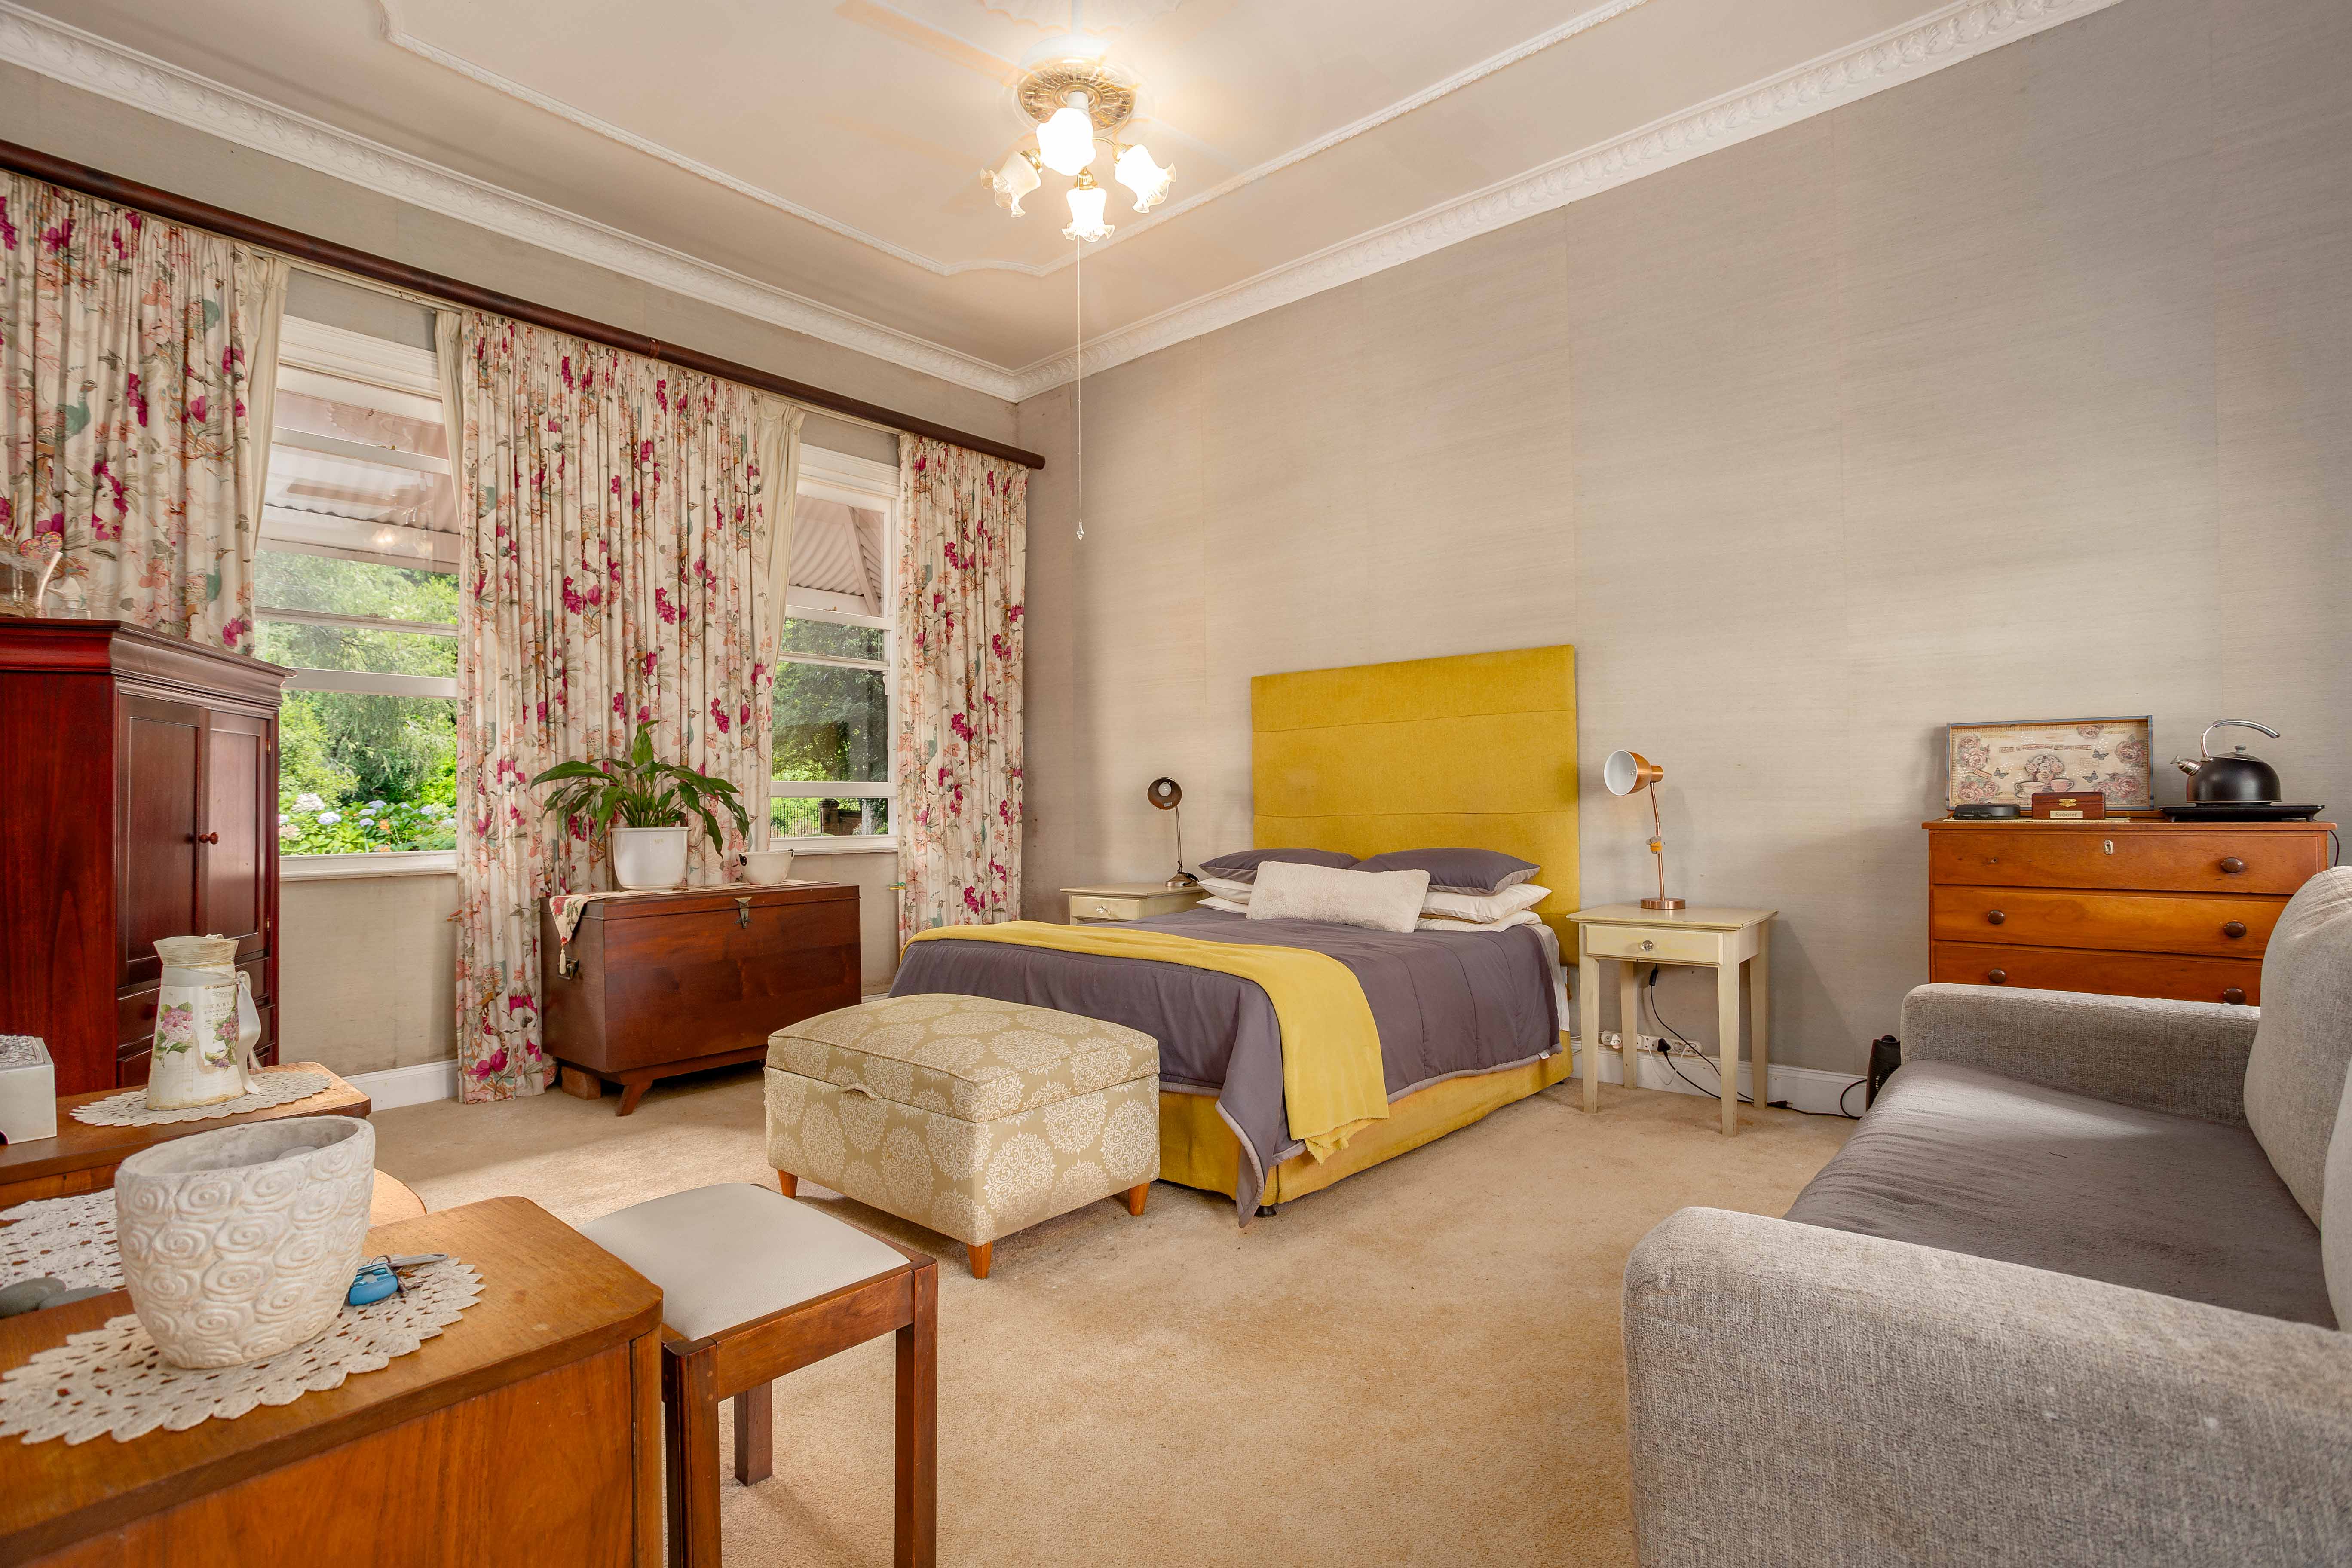 6 Bedroom Property for Sale in Blackridge KwaZulu-Natal